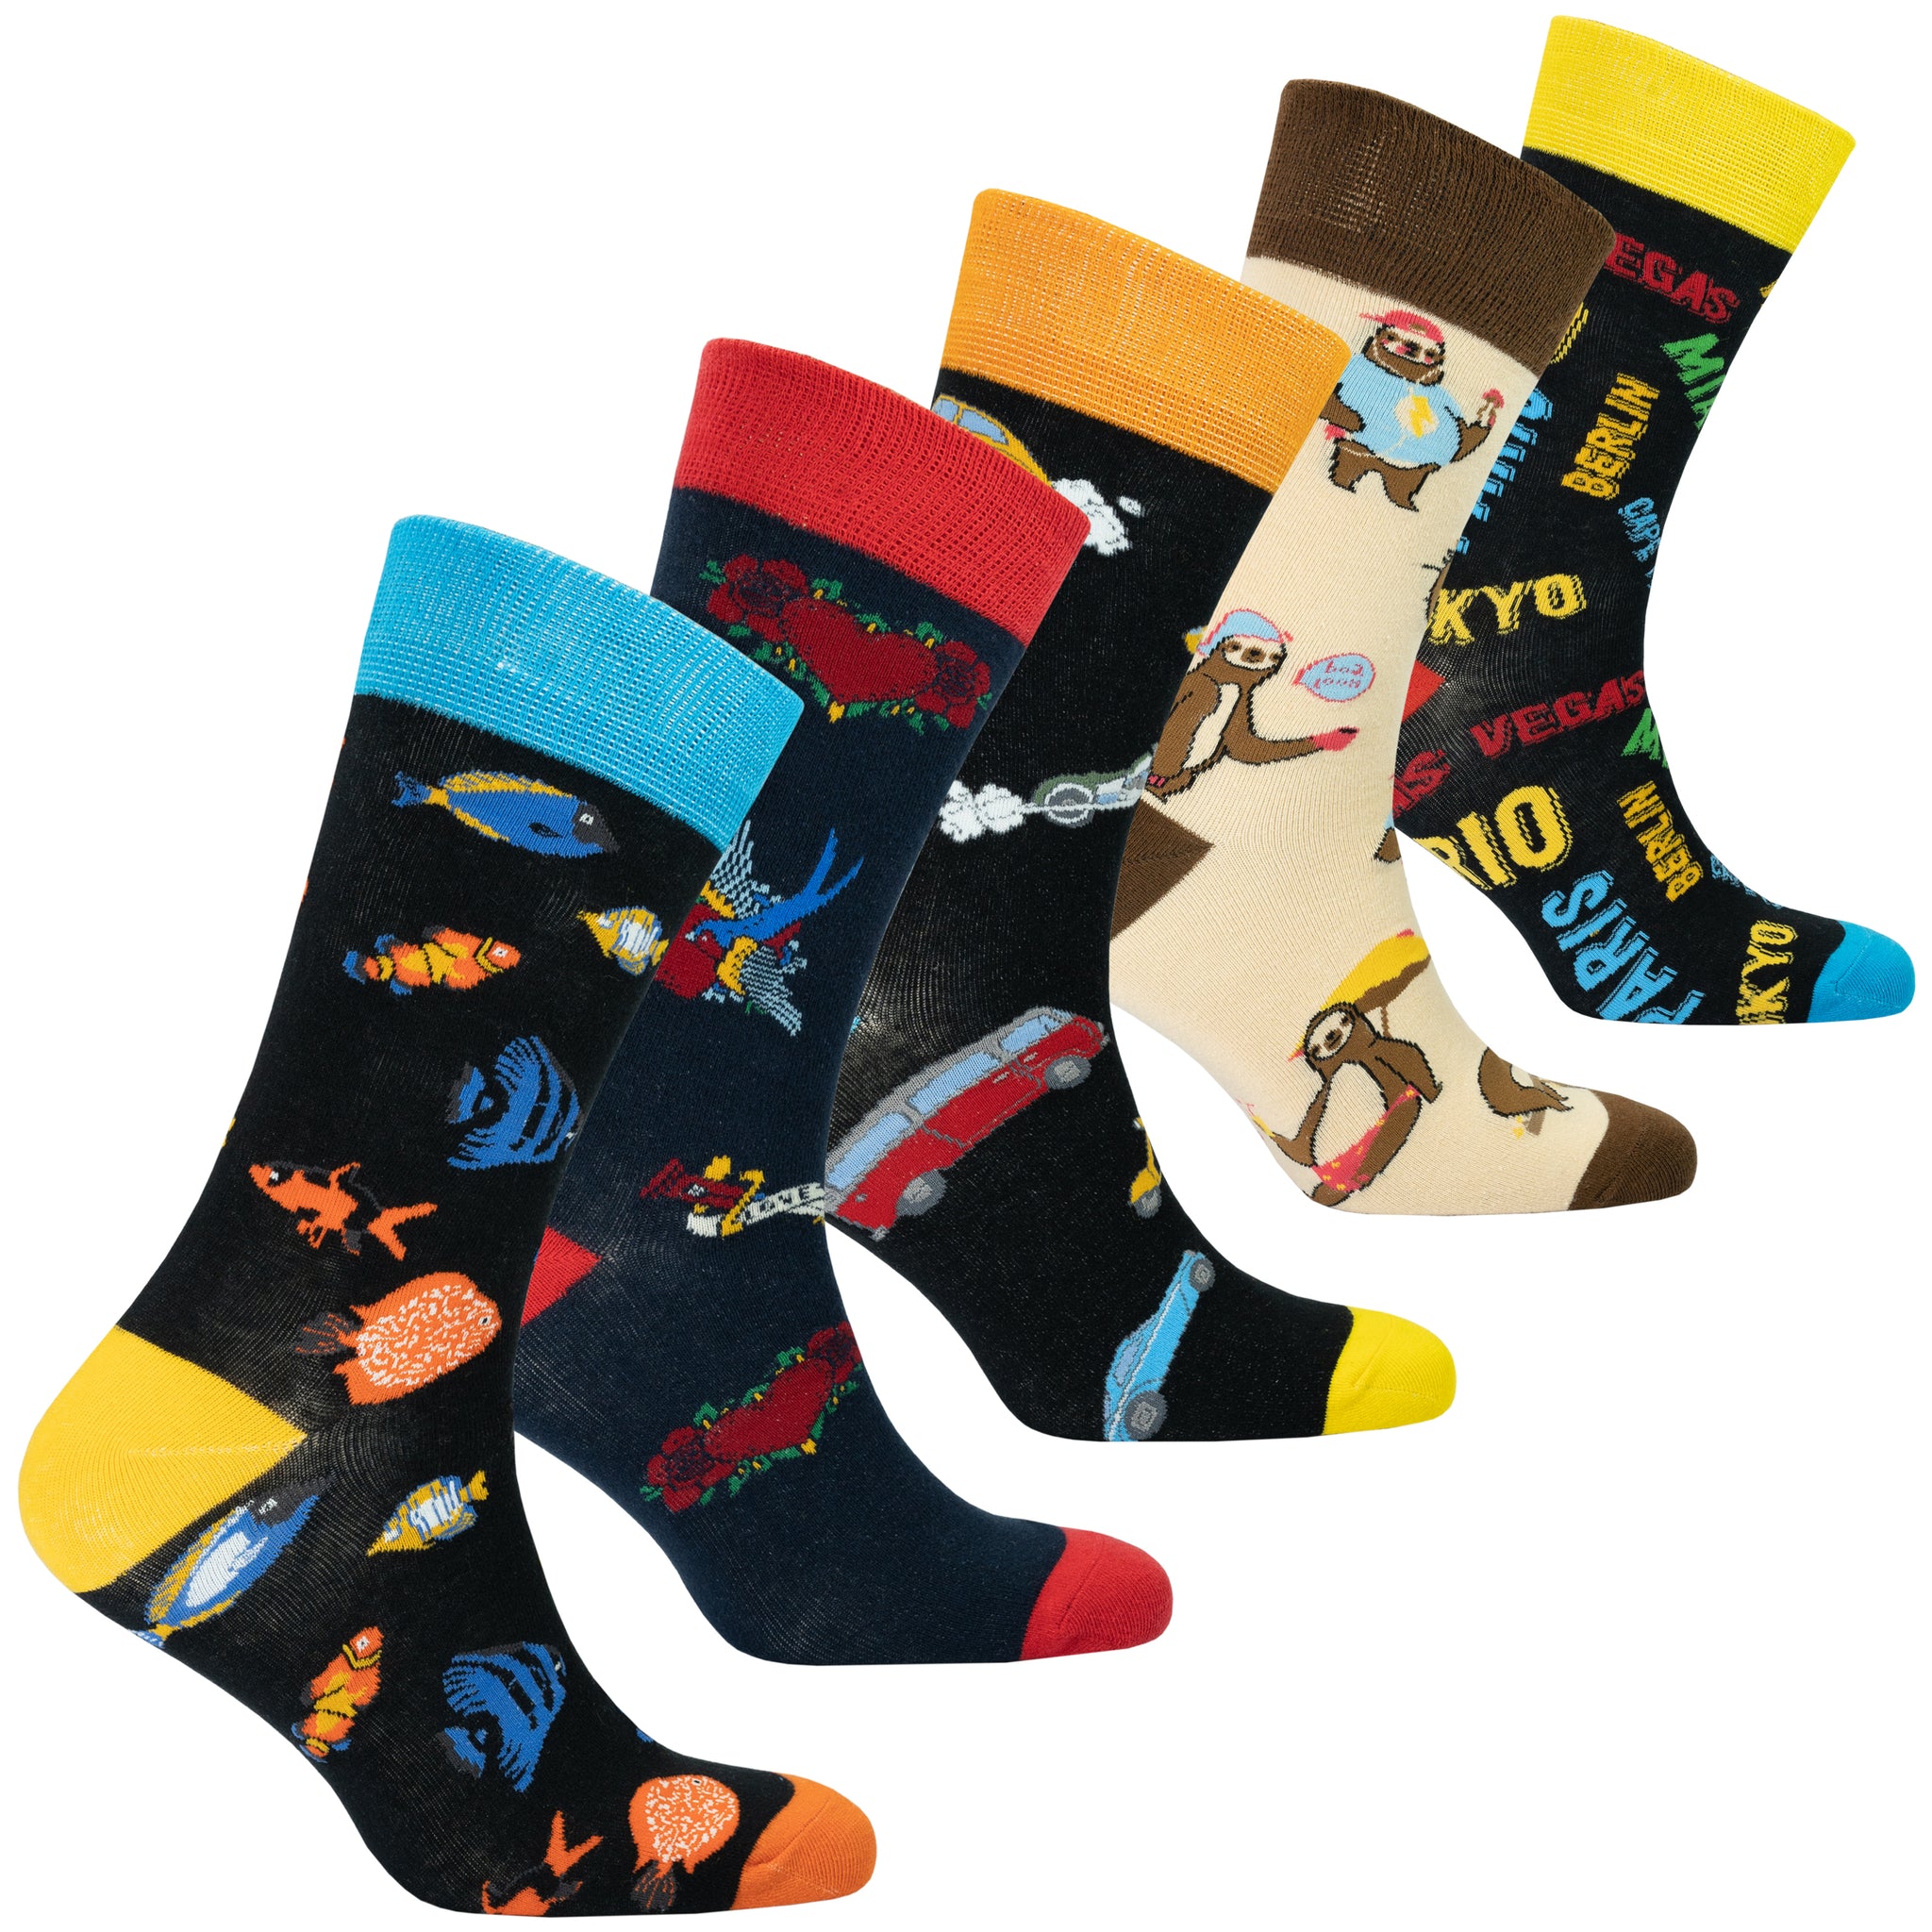 Men 5-Pack Gift Box Socks - Socks n Socks